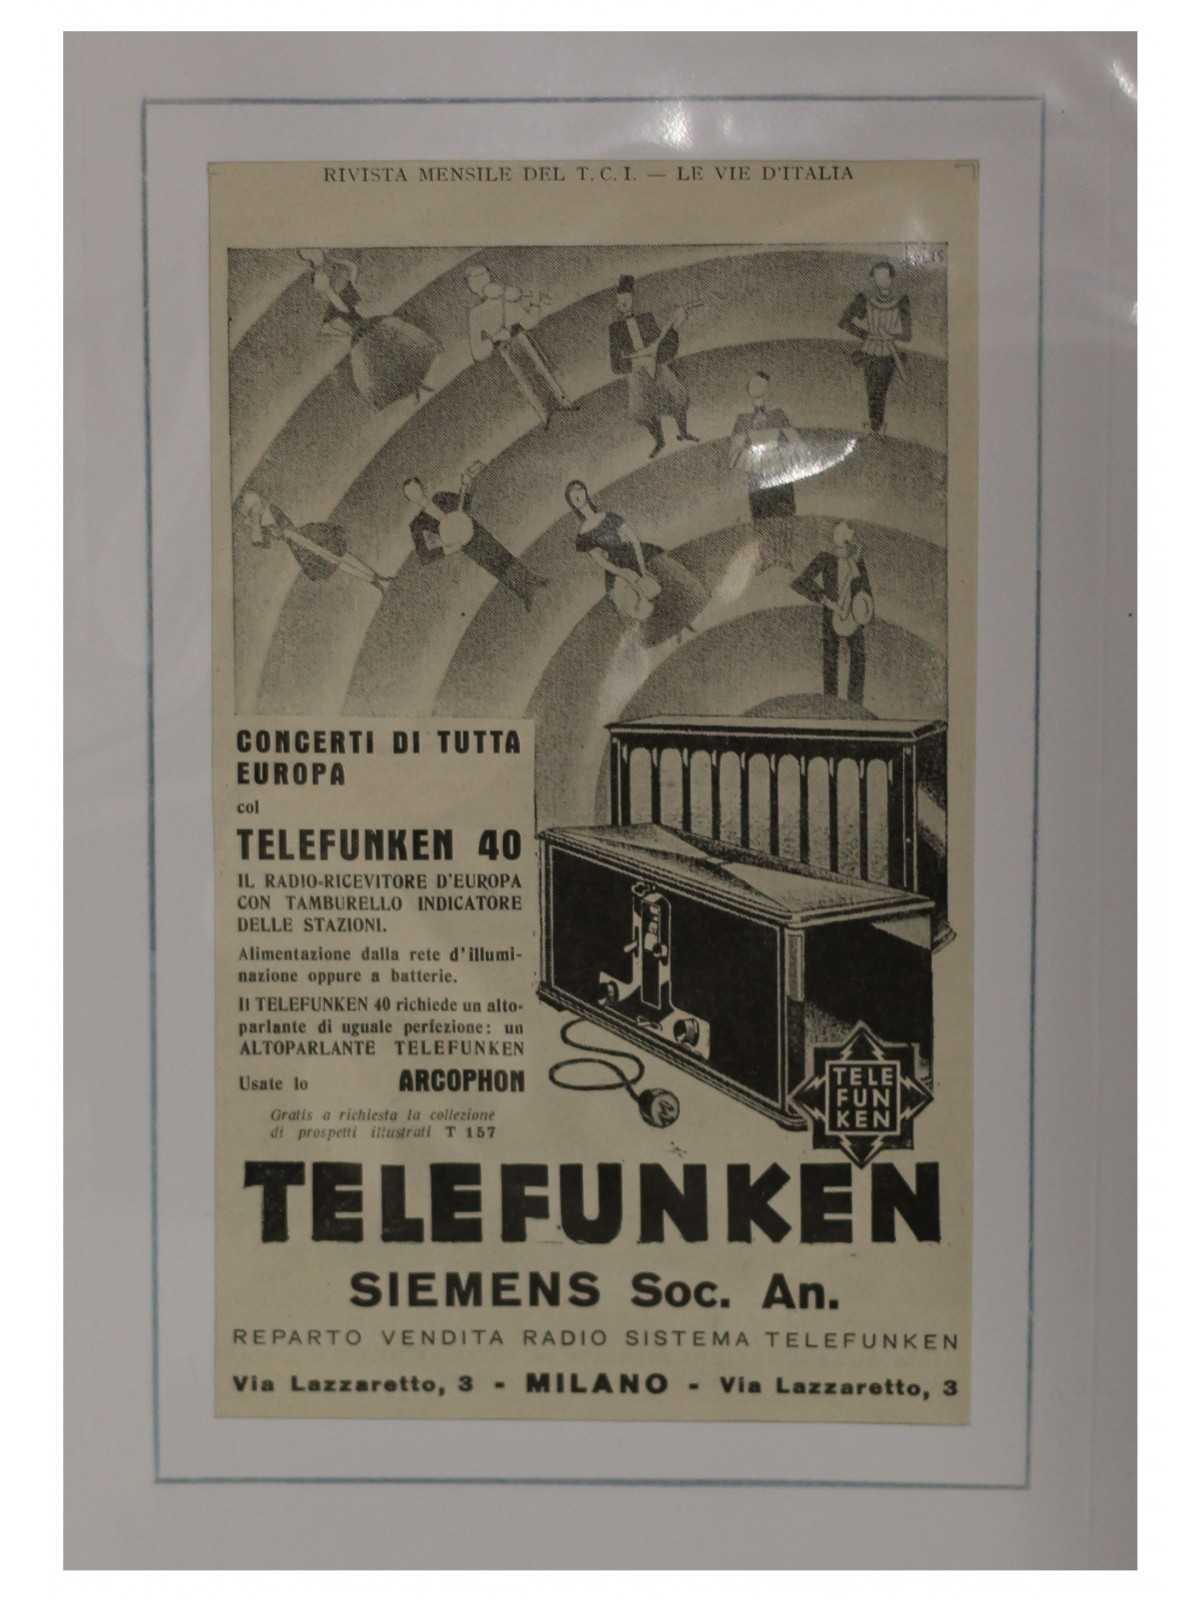 1923 TELEFUNKEN SIEMENS SOC. AN. RADIO PUBBLICITA' D'EPOCA - ORIGINALE -